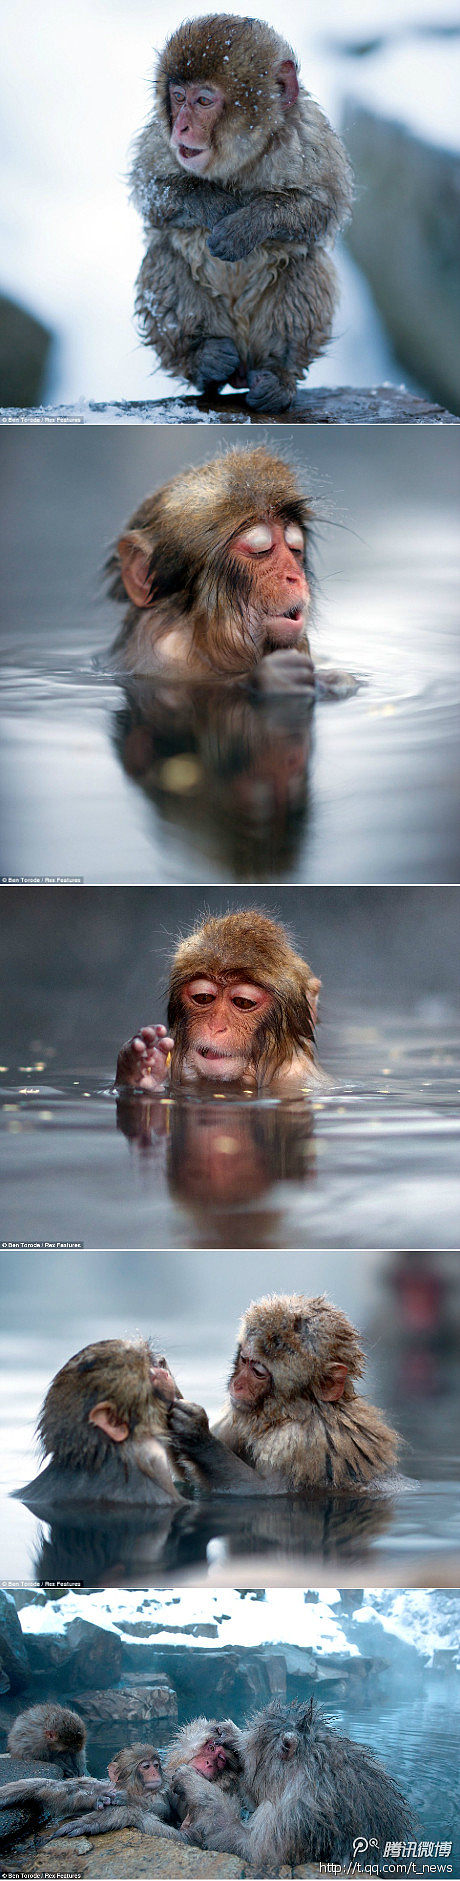 喜泡温泉的猴子。
日本摄影师拍到一组有趣...